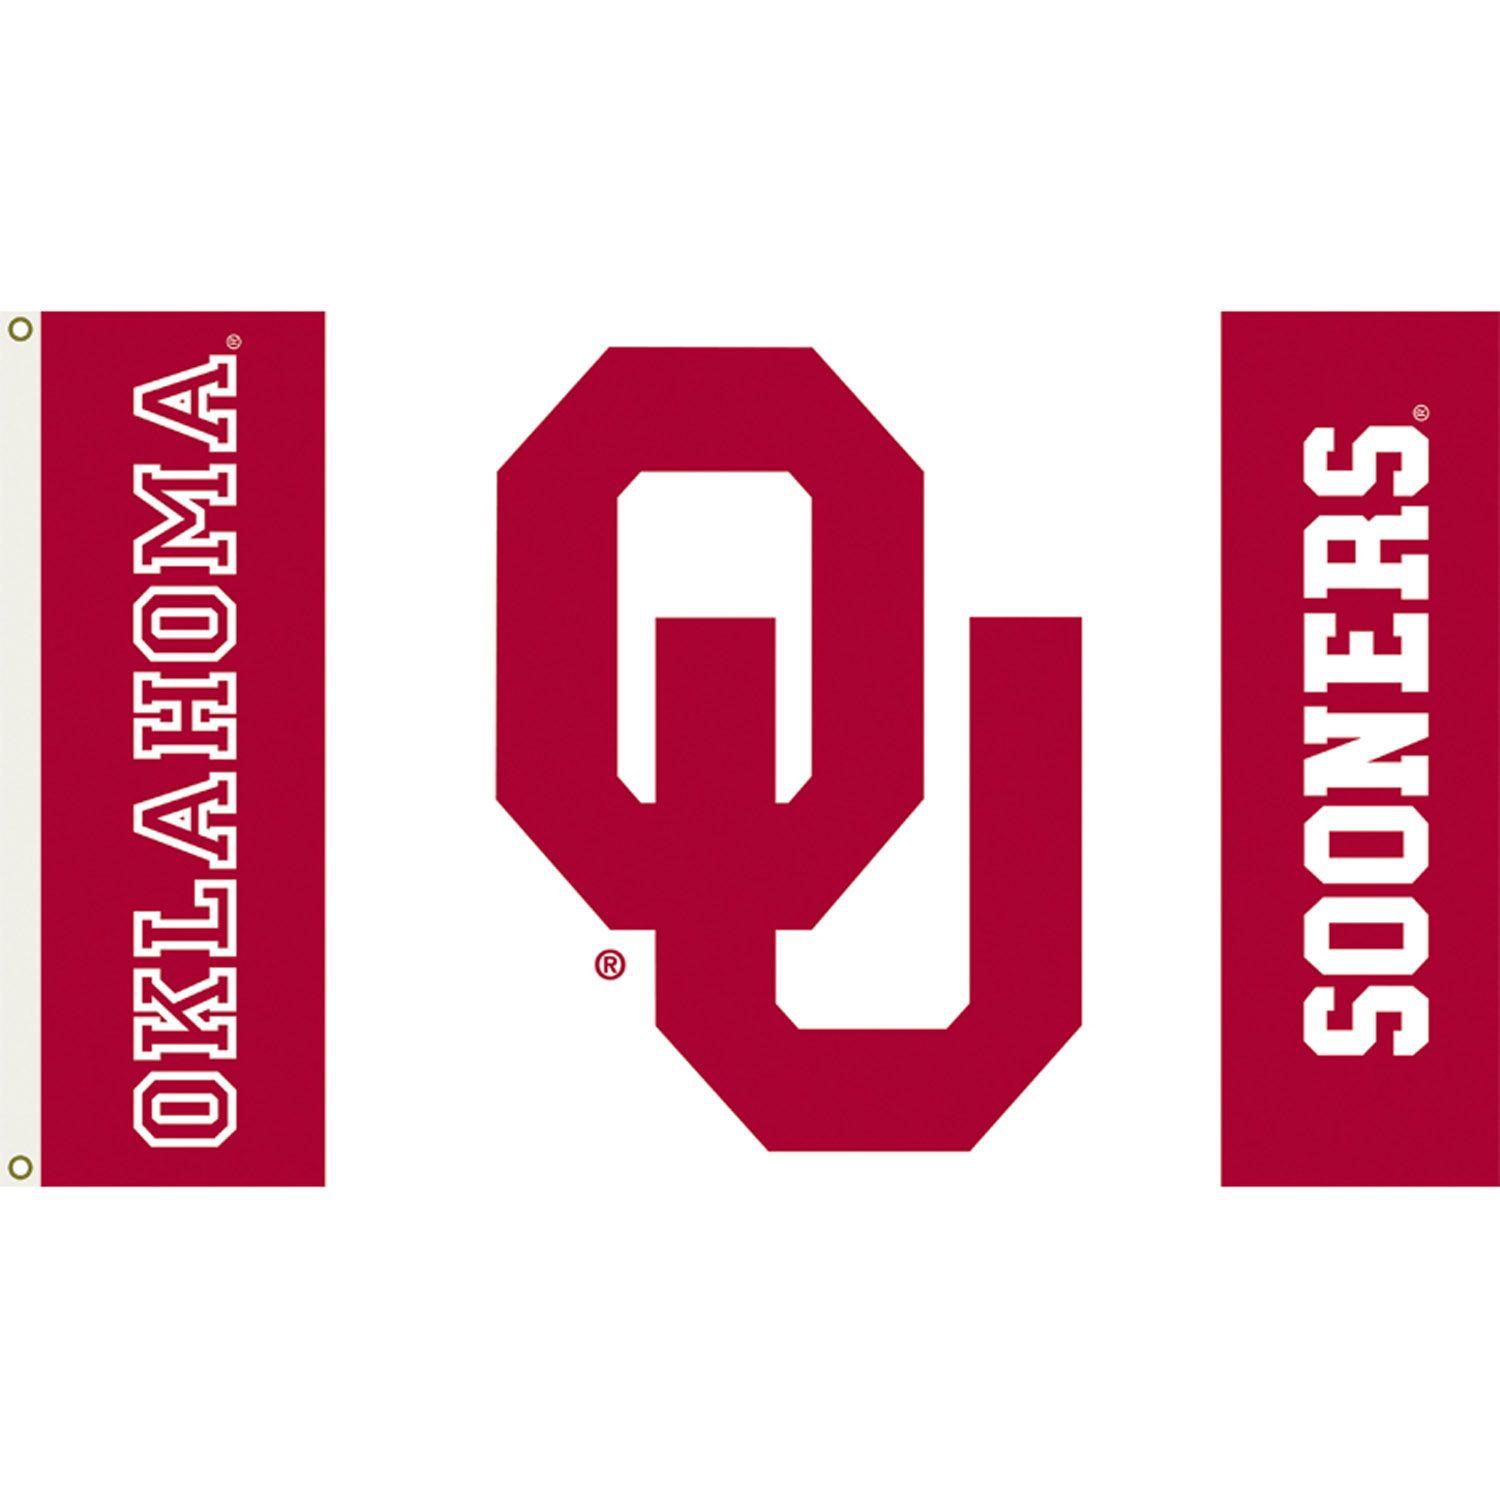 Sooners Logo - Oklahoma Sooners 3ft x 5ft Team Flag - Logo Design 2